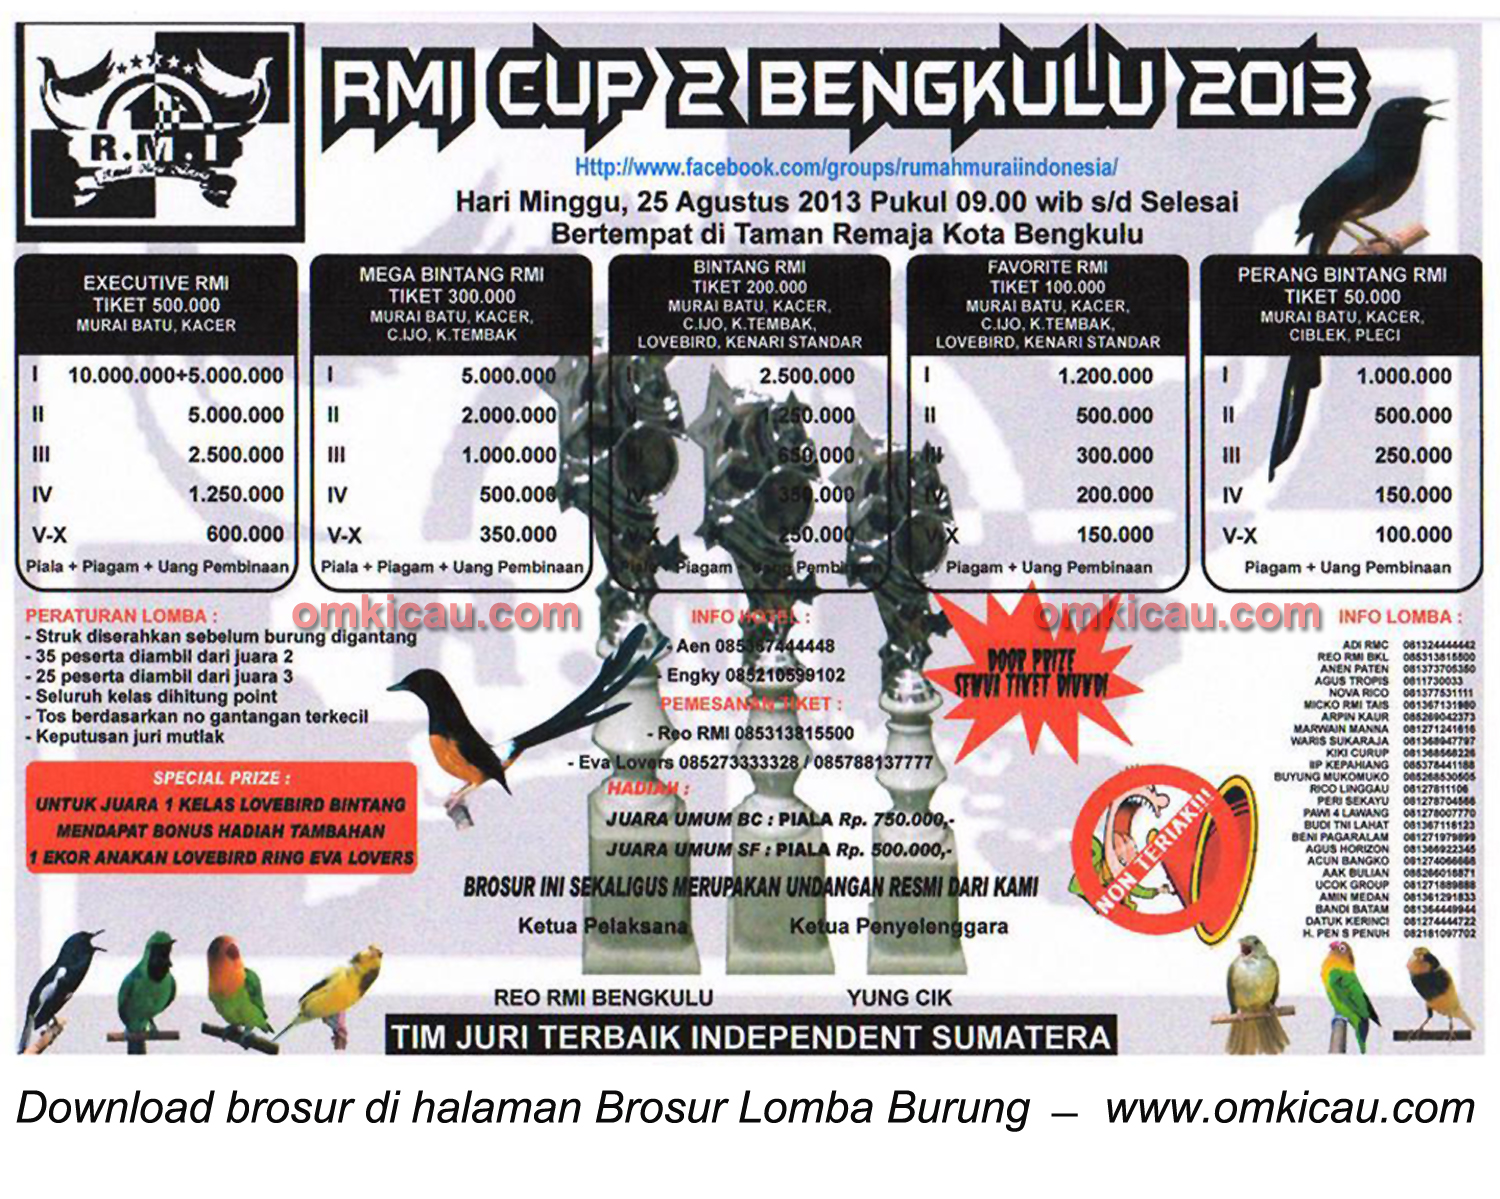 Brosur Lomba Burung Berkicau RMI Cup 2, Bengkulu, 25 Agustus 2013